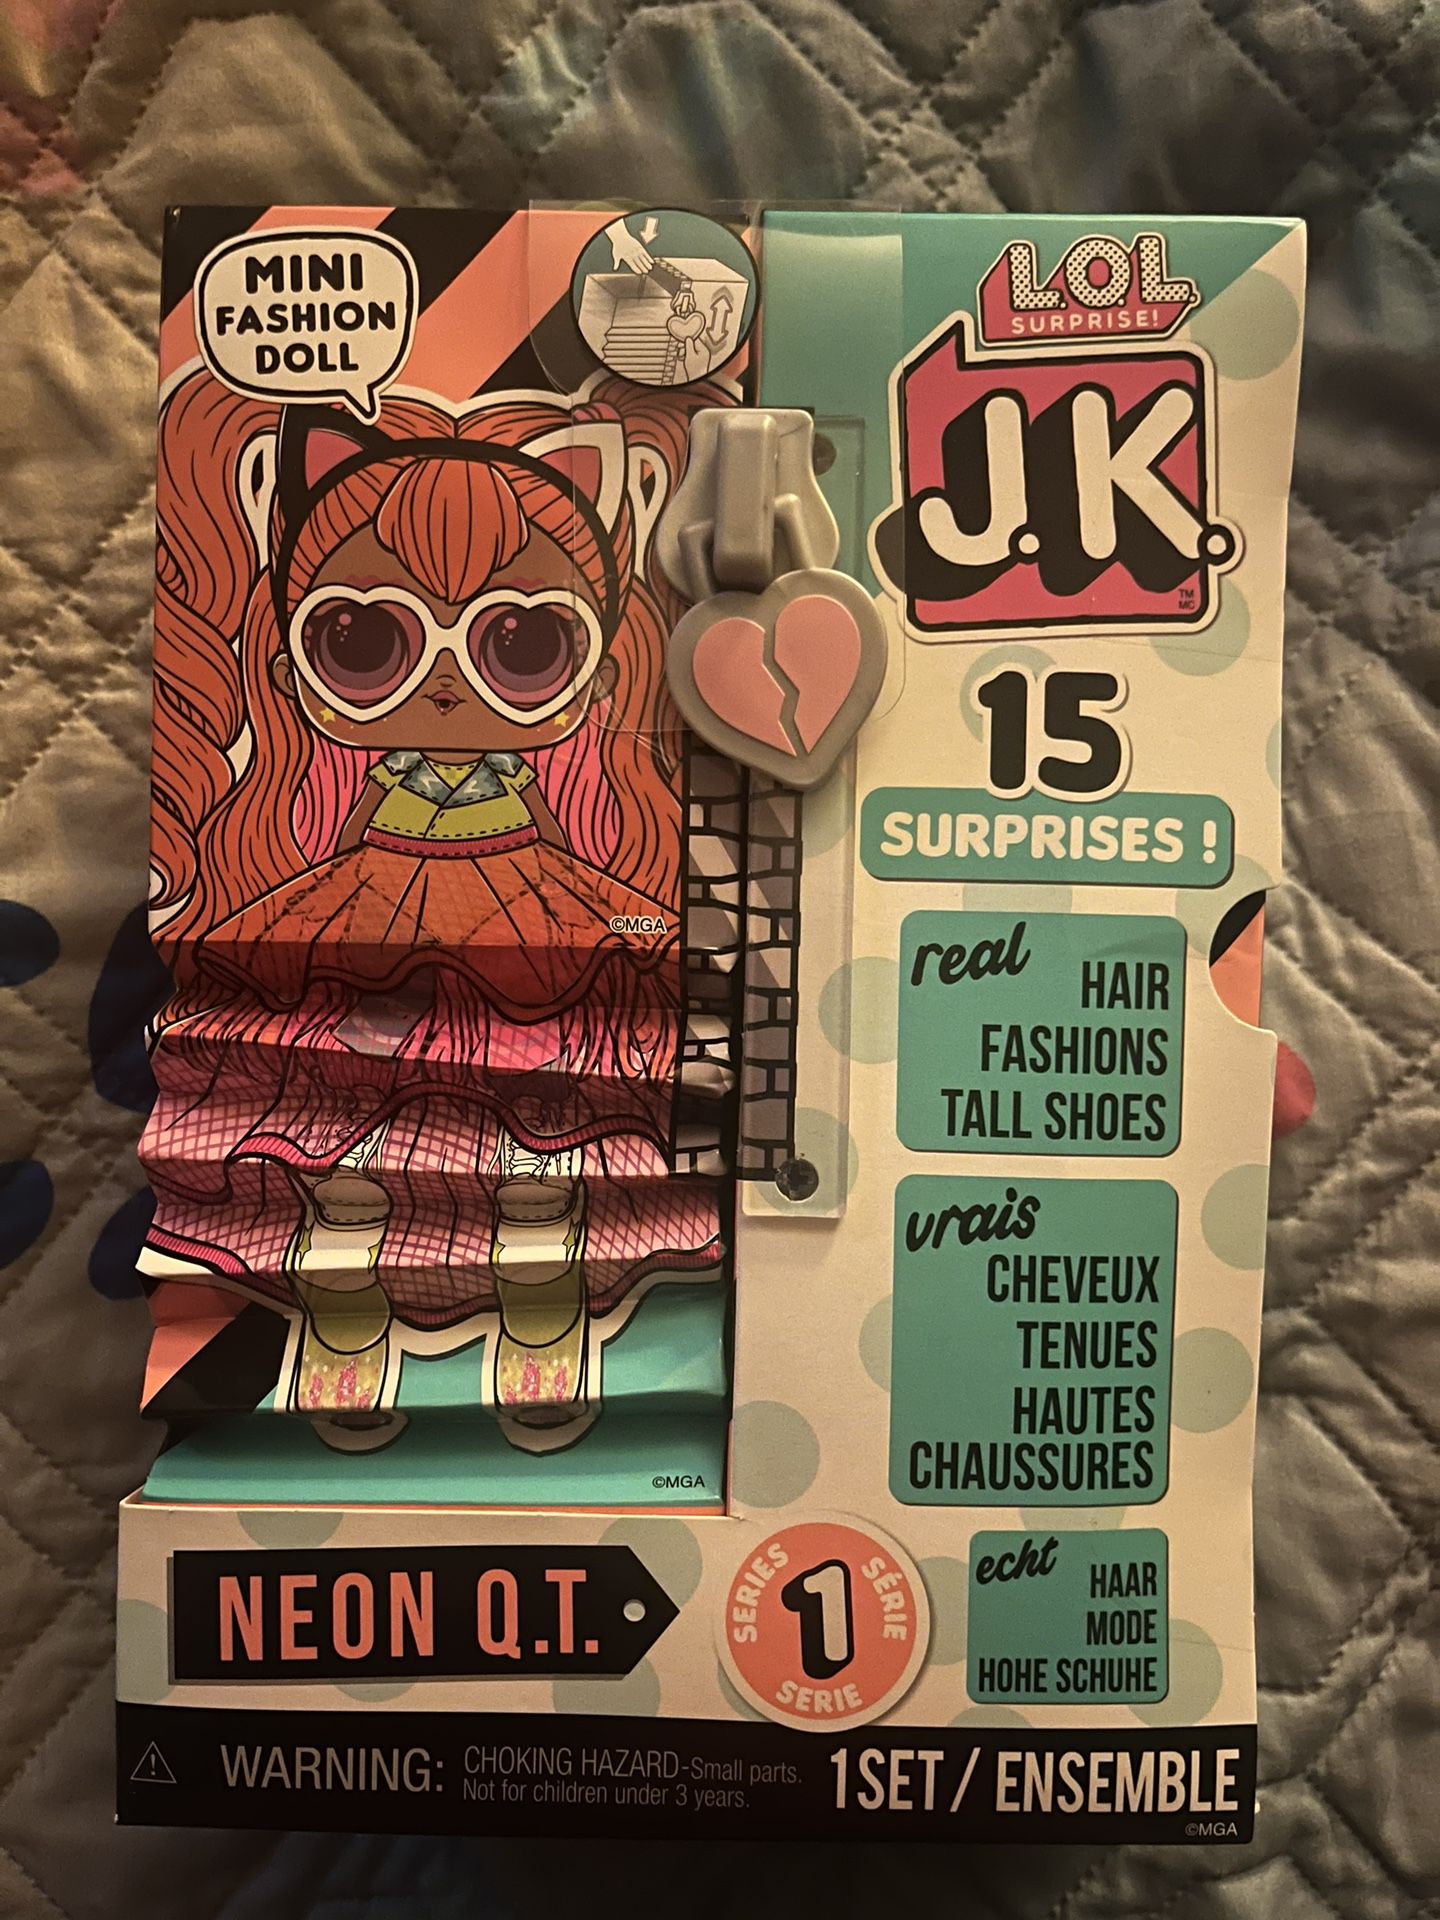 LOL Surprise JK Neon Q.T. Mini Fashion Doll with 15 Surprises 